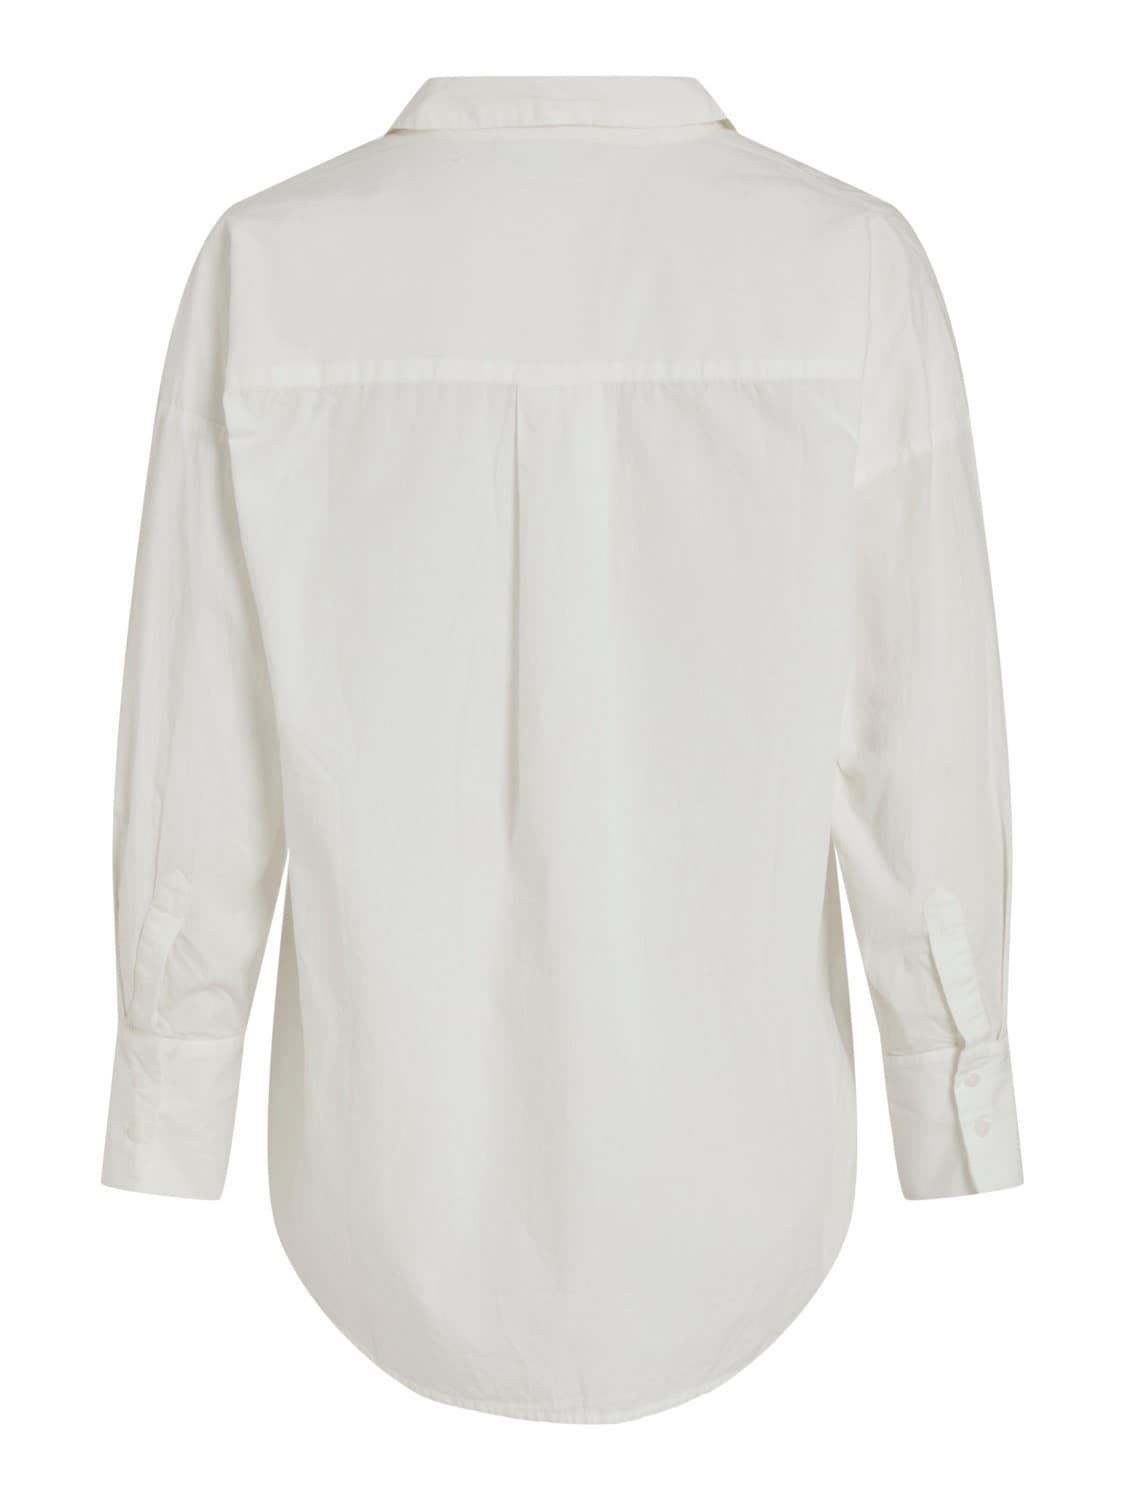 Camisa manga larga Vigamis blanca - Imagen 4